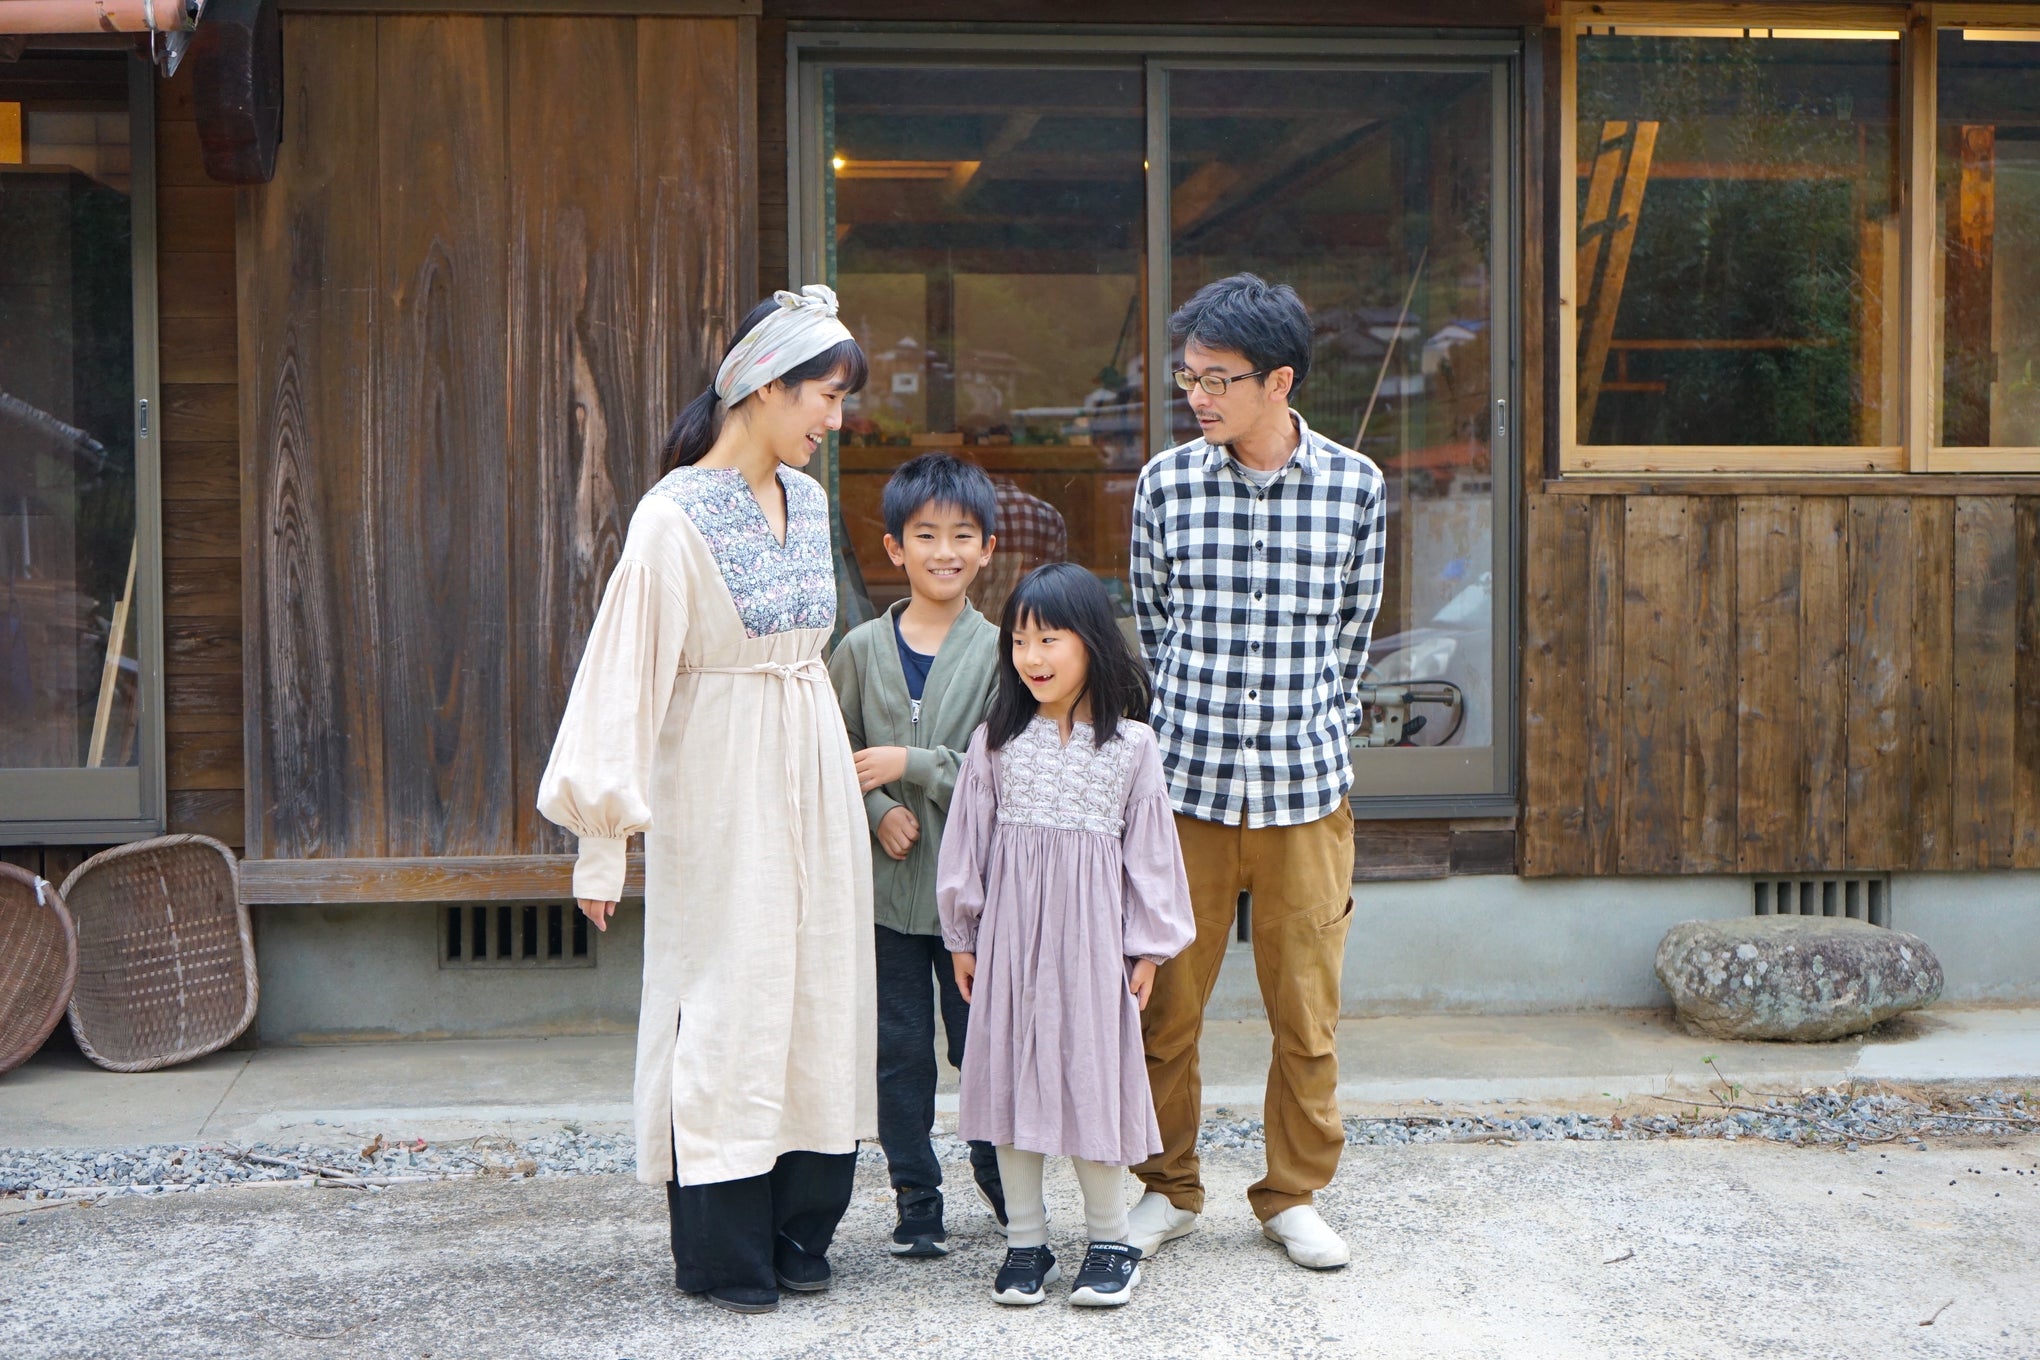 【住めばよかとこ波佐見 vol.7】東京から移住した4人家族の、暮らしの変化。